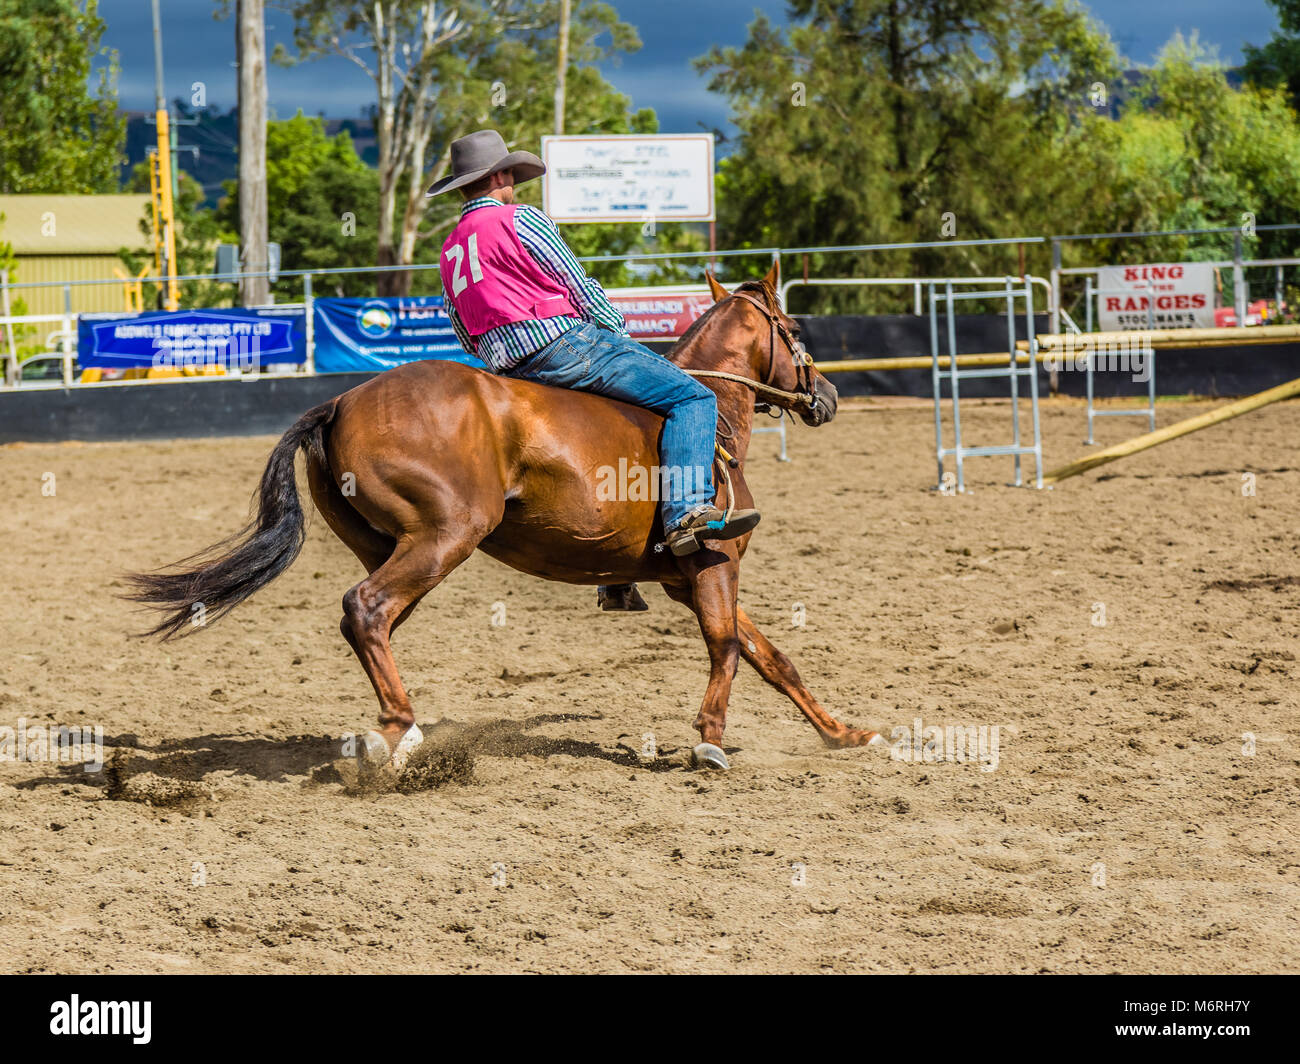 Rider mostra la sua abilità nel re delle gamme Bareback Freestyle in Murrurundi, NSW, Australia, 24 febbraio 2018. Foto Stock